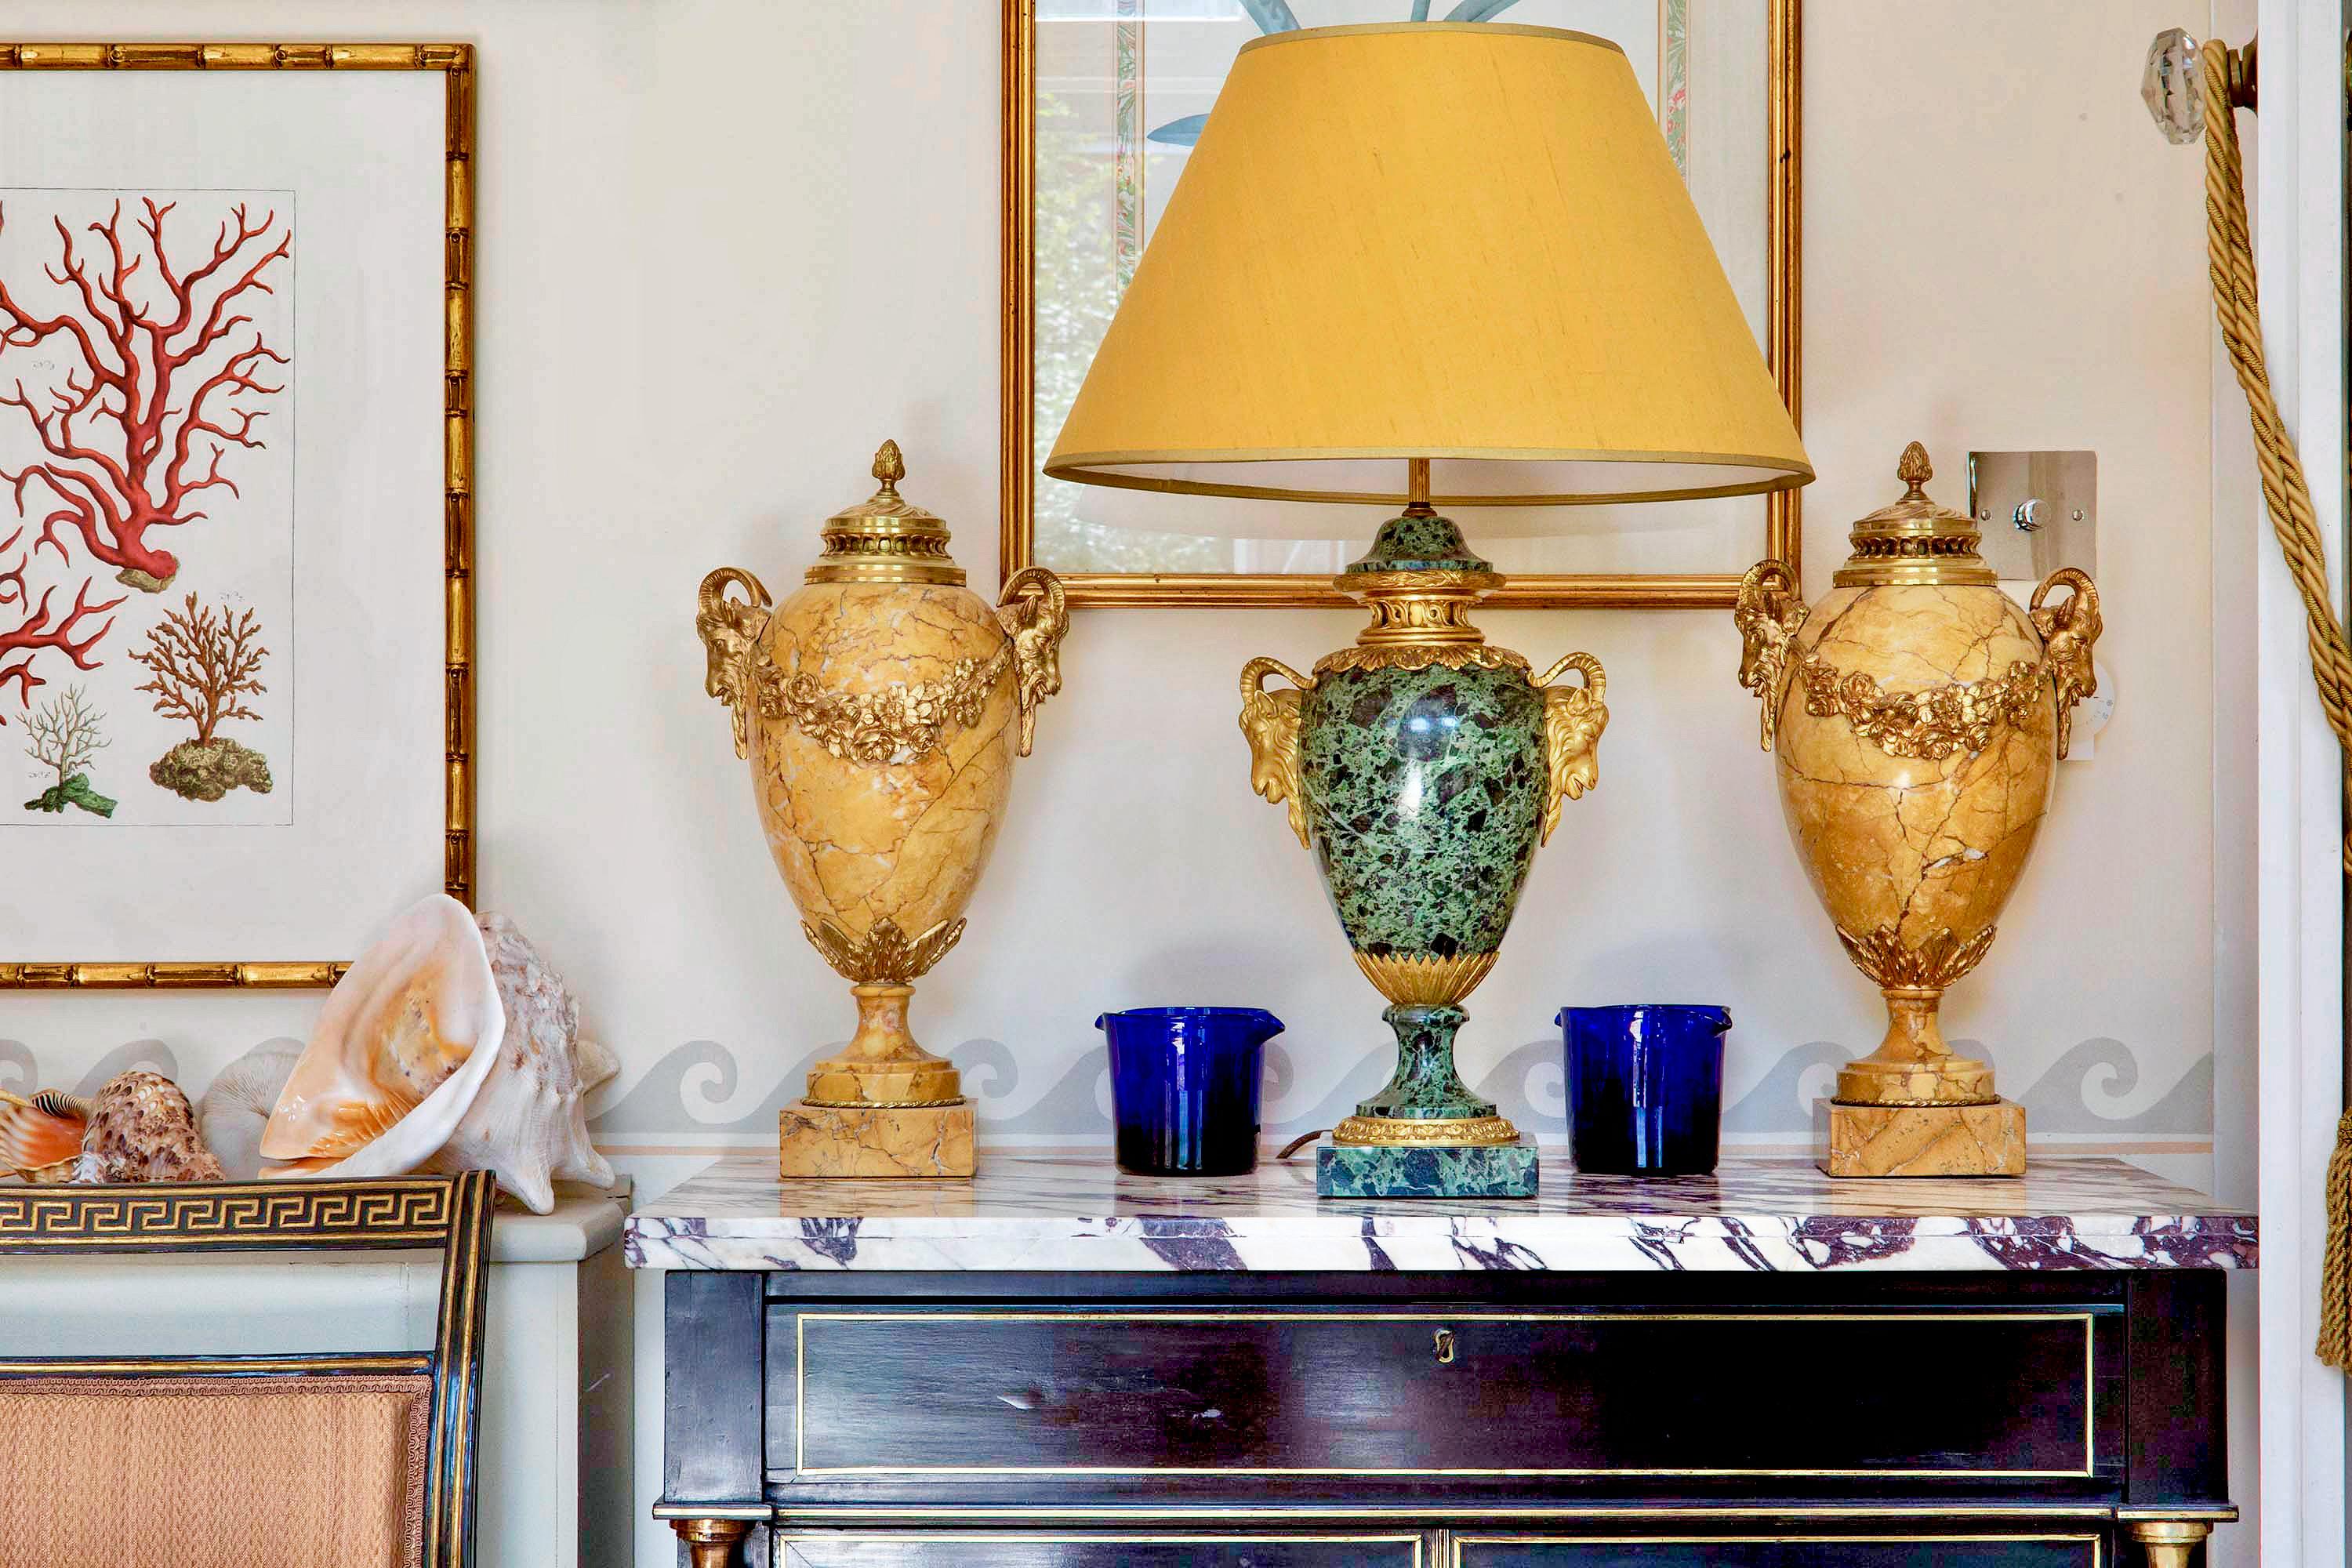 Paire d'urnes néoclassiques en marbre de Sienne, superbement décoratives, avec des montures en bronze doré.

Français, fin 19e - début 20e siècle.

Nous aimons la couleur et l'échelle de ces splendides urnes.

Objet parfait pour la décoration